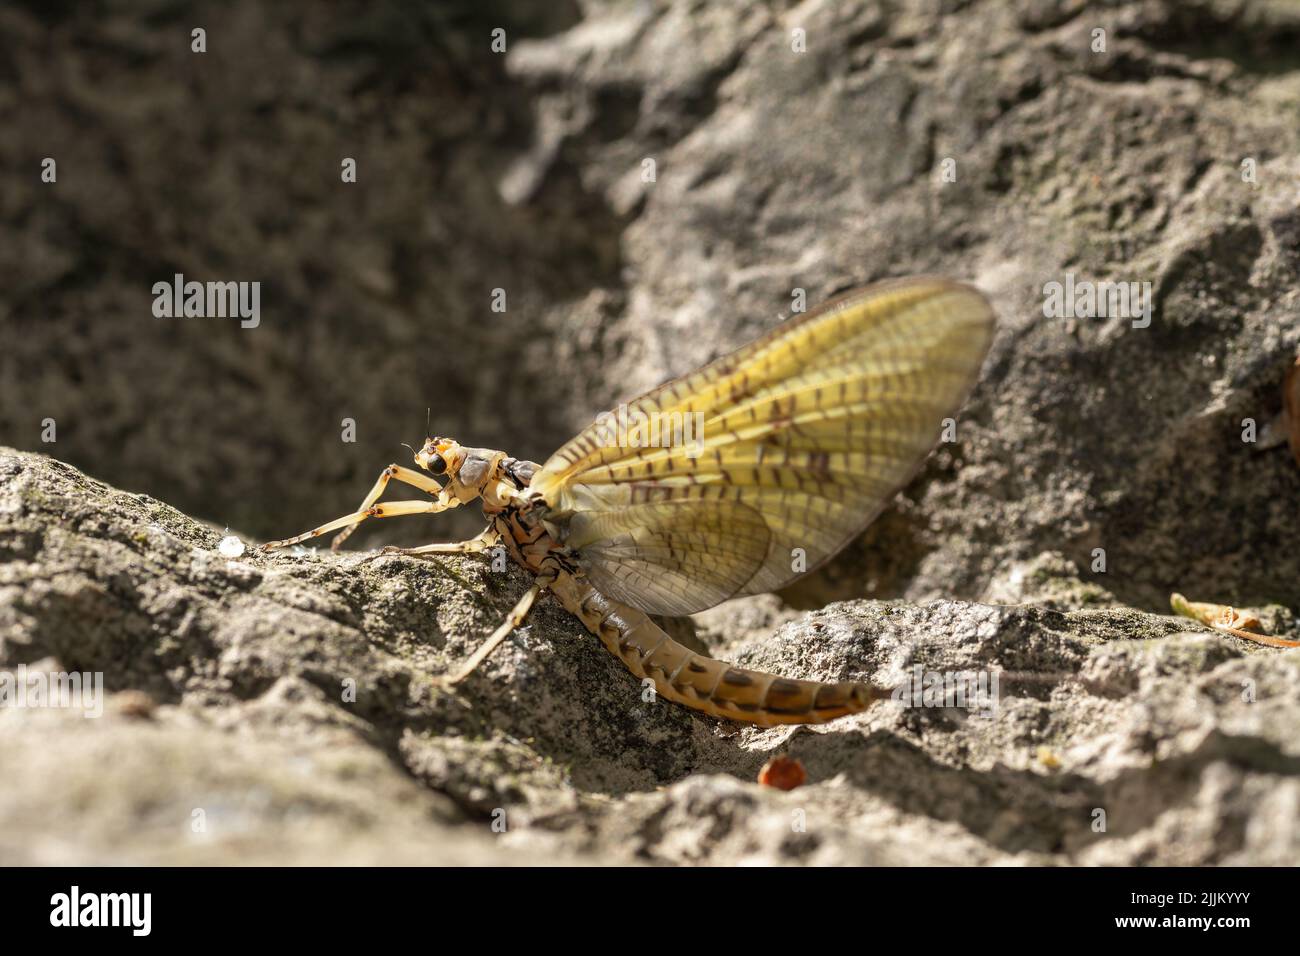 A close-up shot of an Ephemera vulgata walking on a rocky surface. Stock Photo